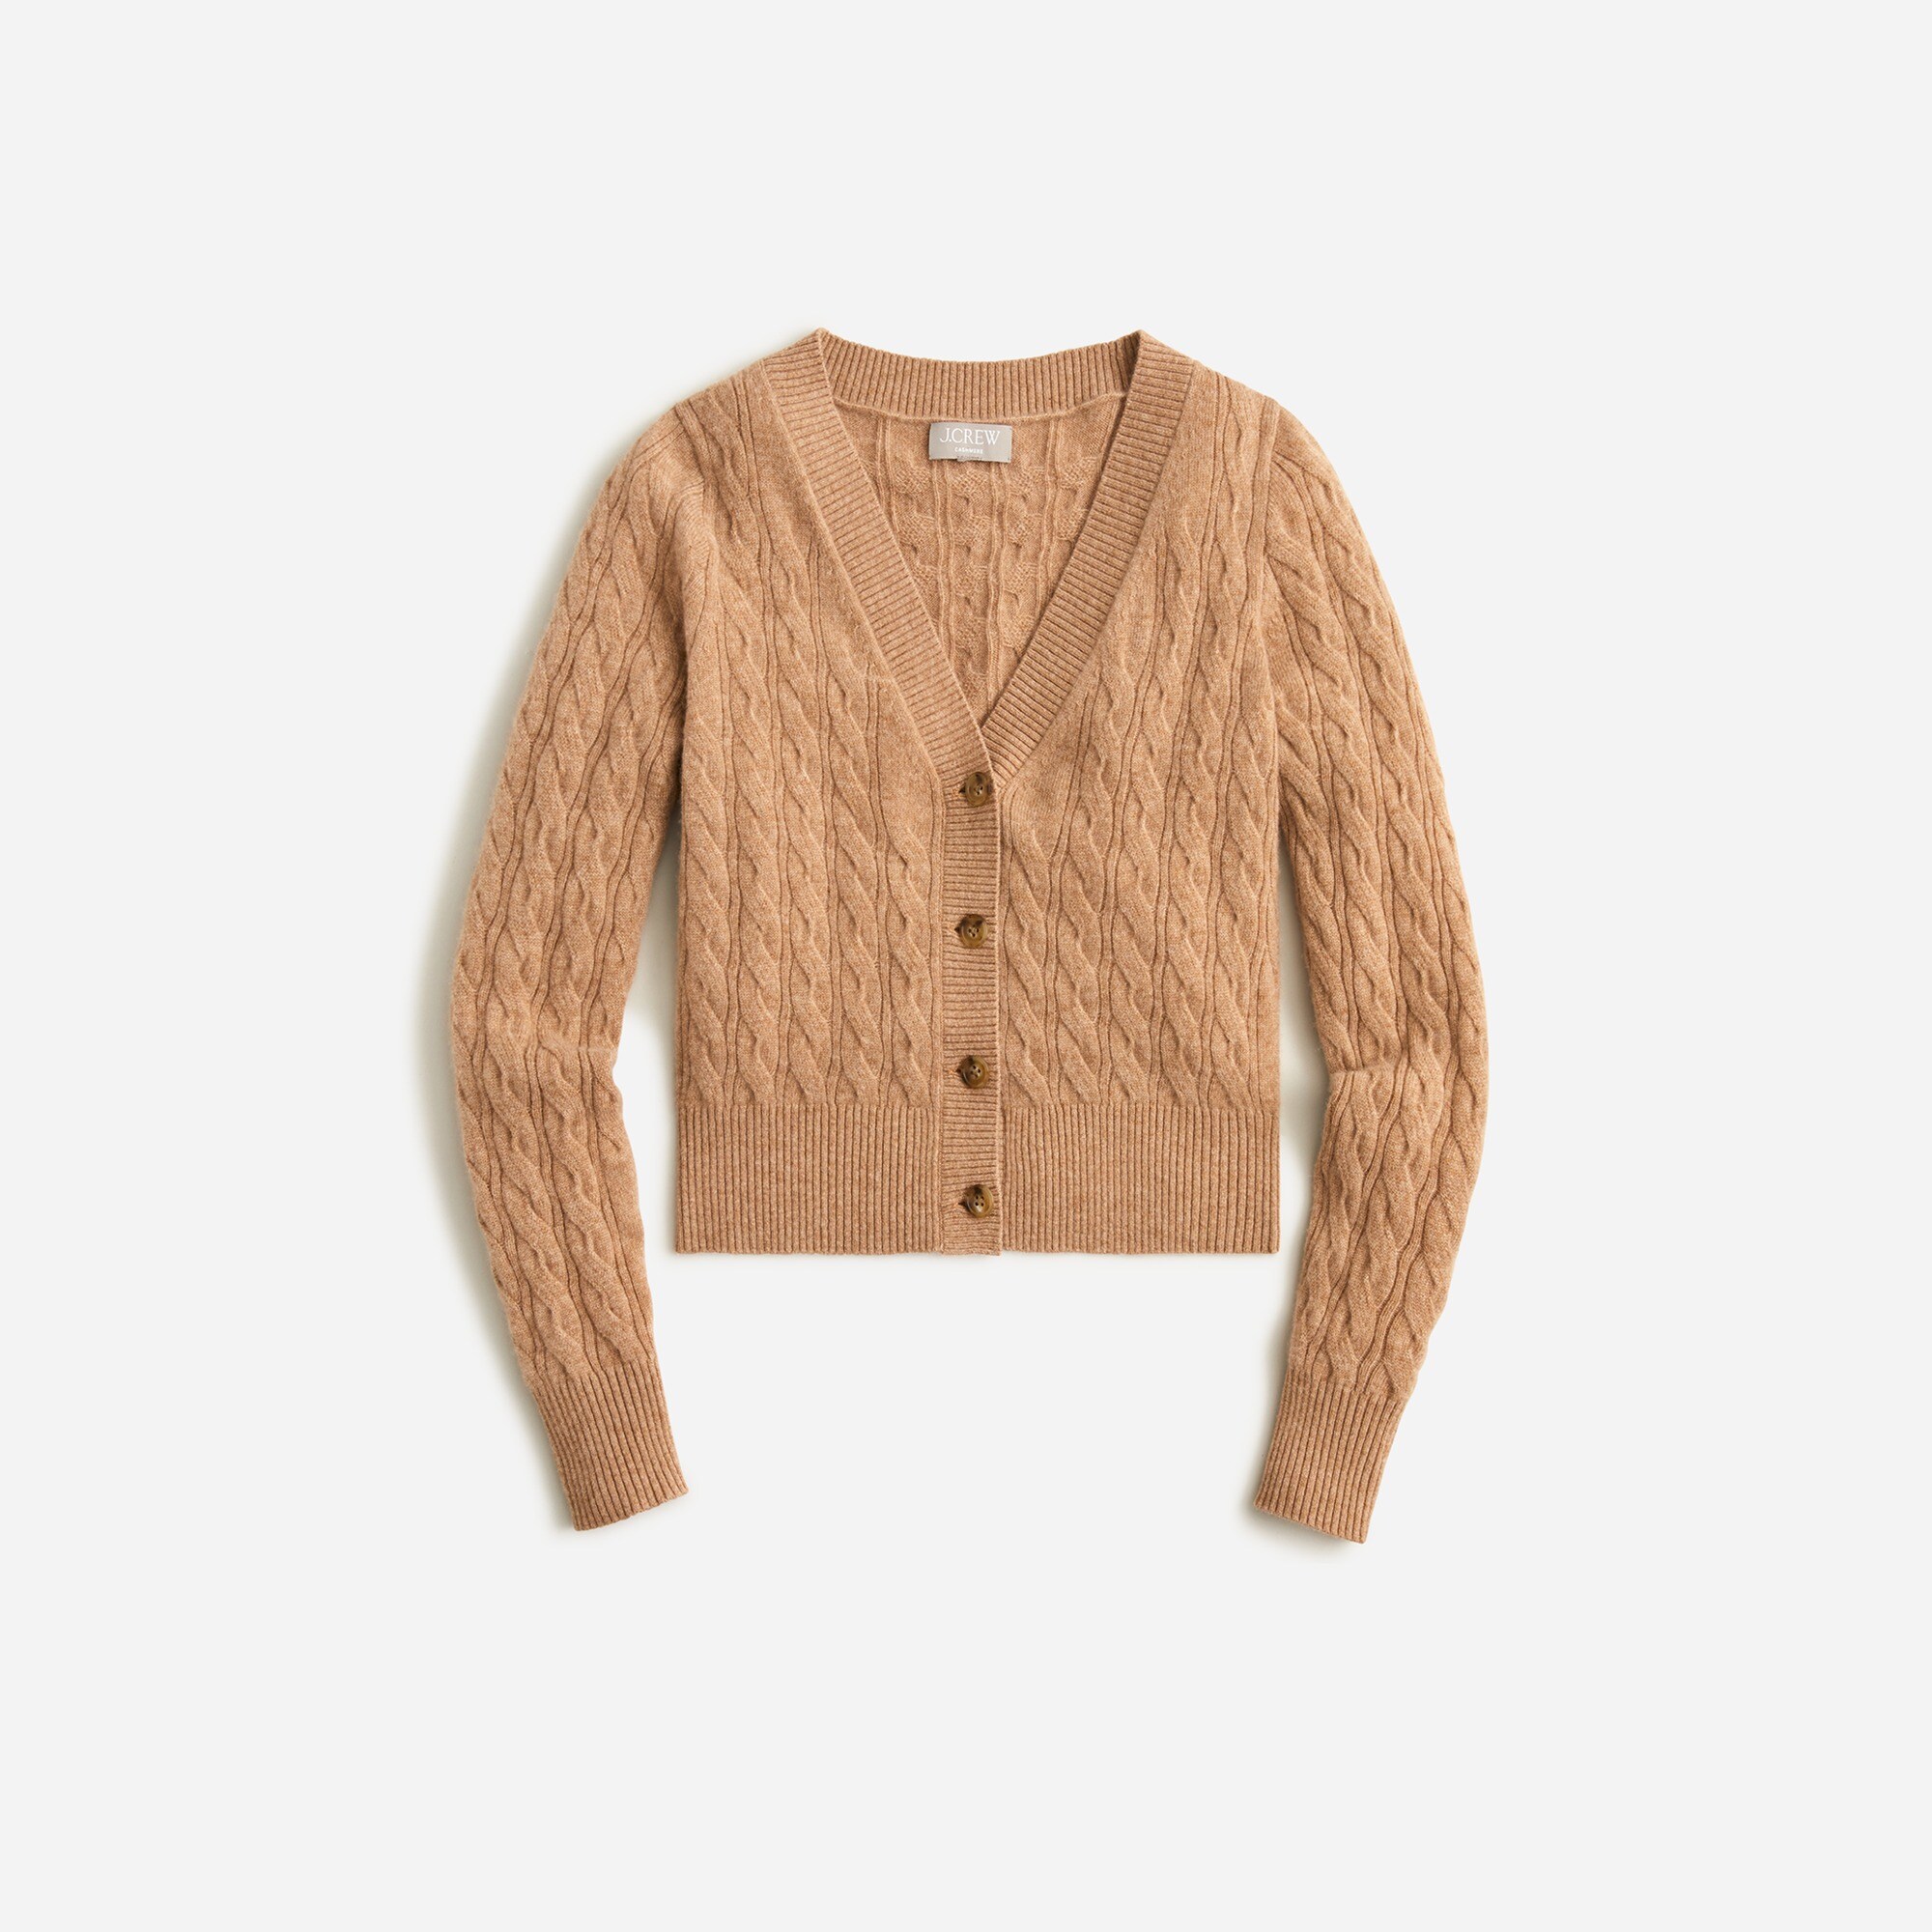  Cashmere shrunken cable-knit V-neck cardigan sweater